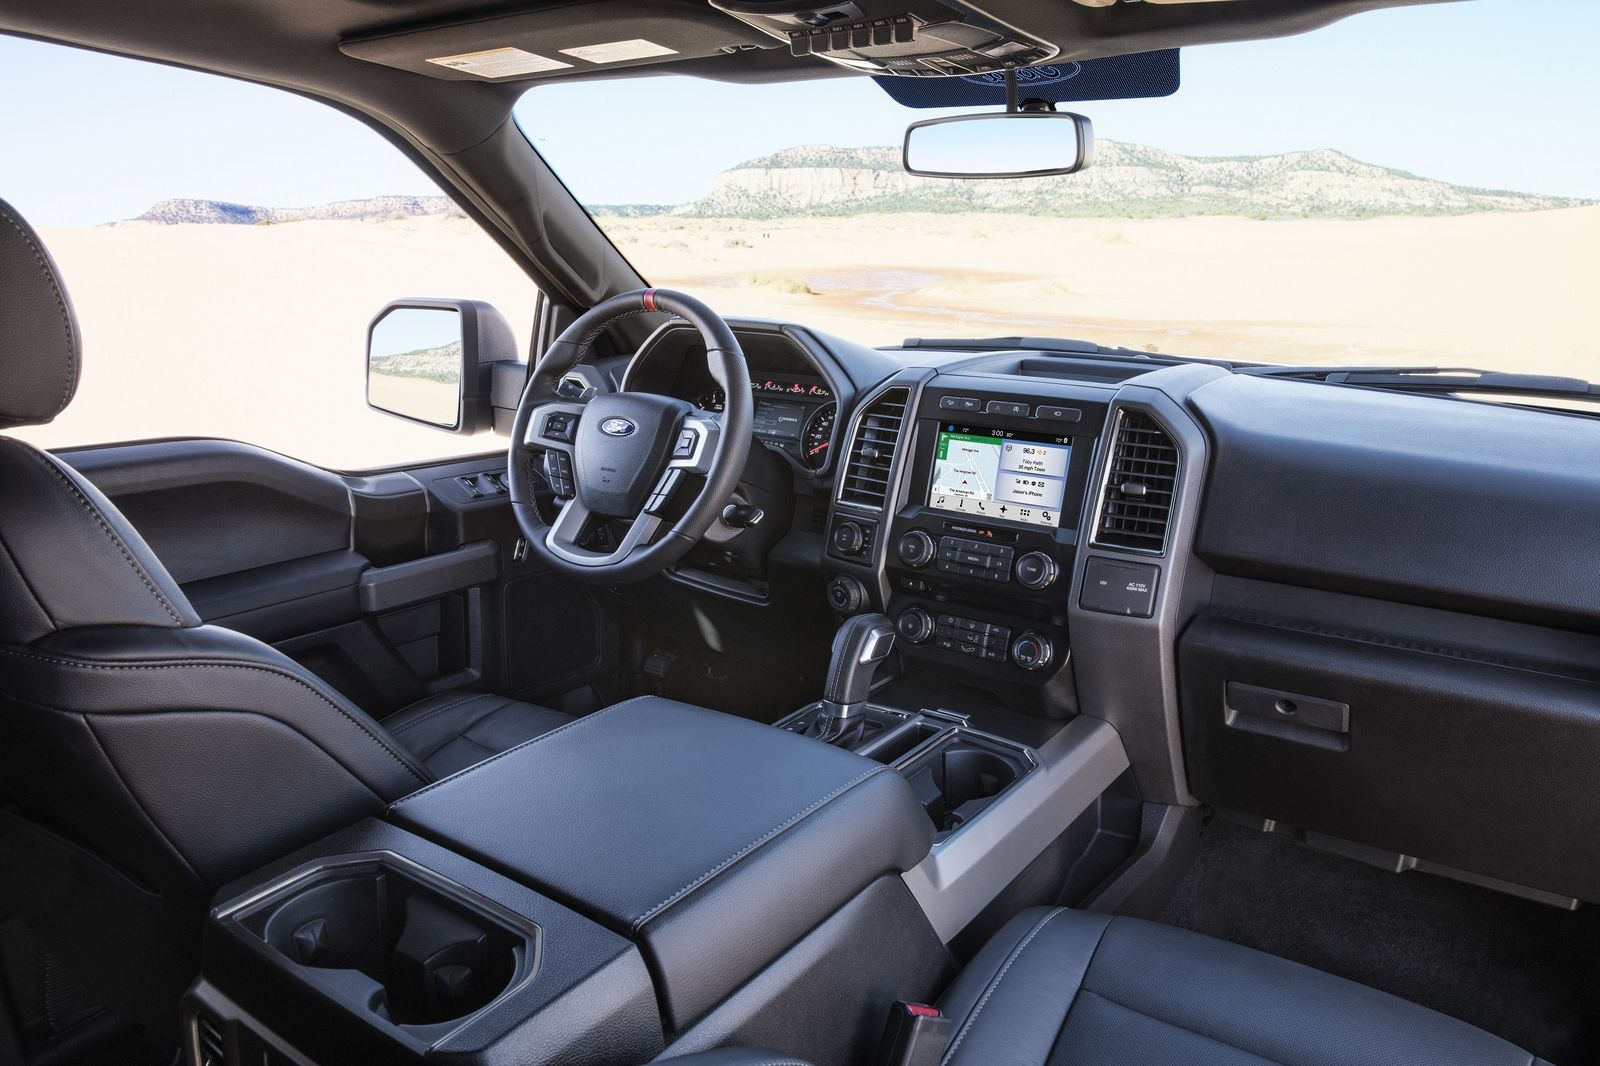 2017 Ford F 150 Supercrew Cab Raptor Interior Forcegt Com